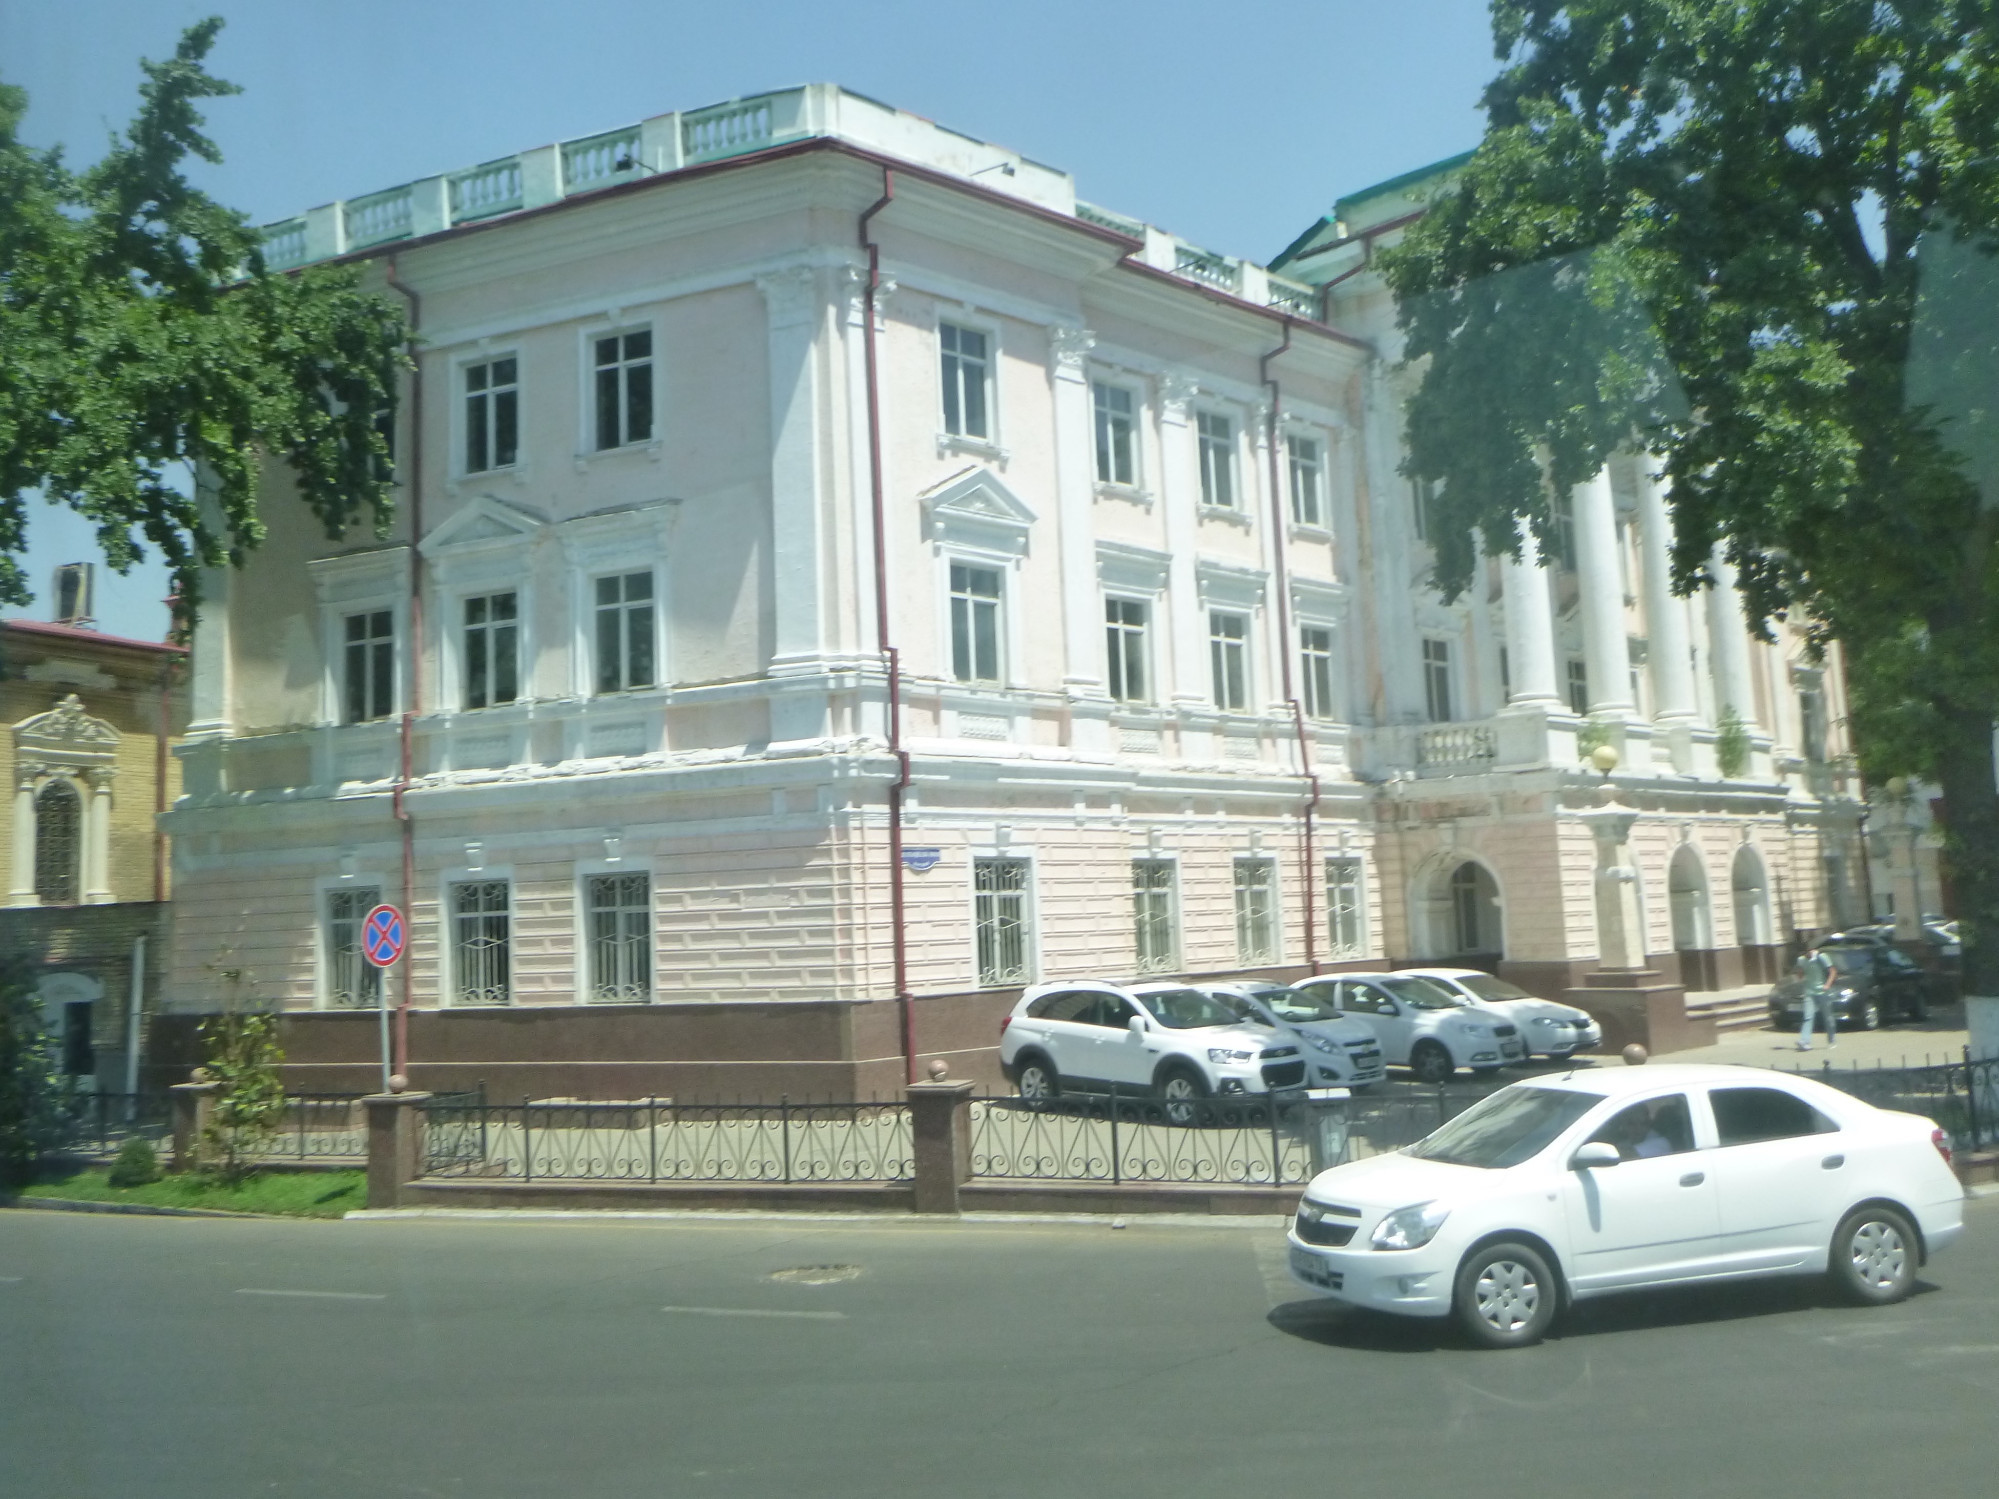 Yekaterinburgskoye Suvorovskoye Voyennoye Uchilishche<br/>
Military School<br/>
